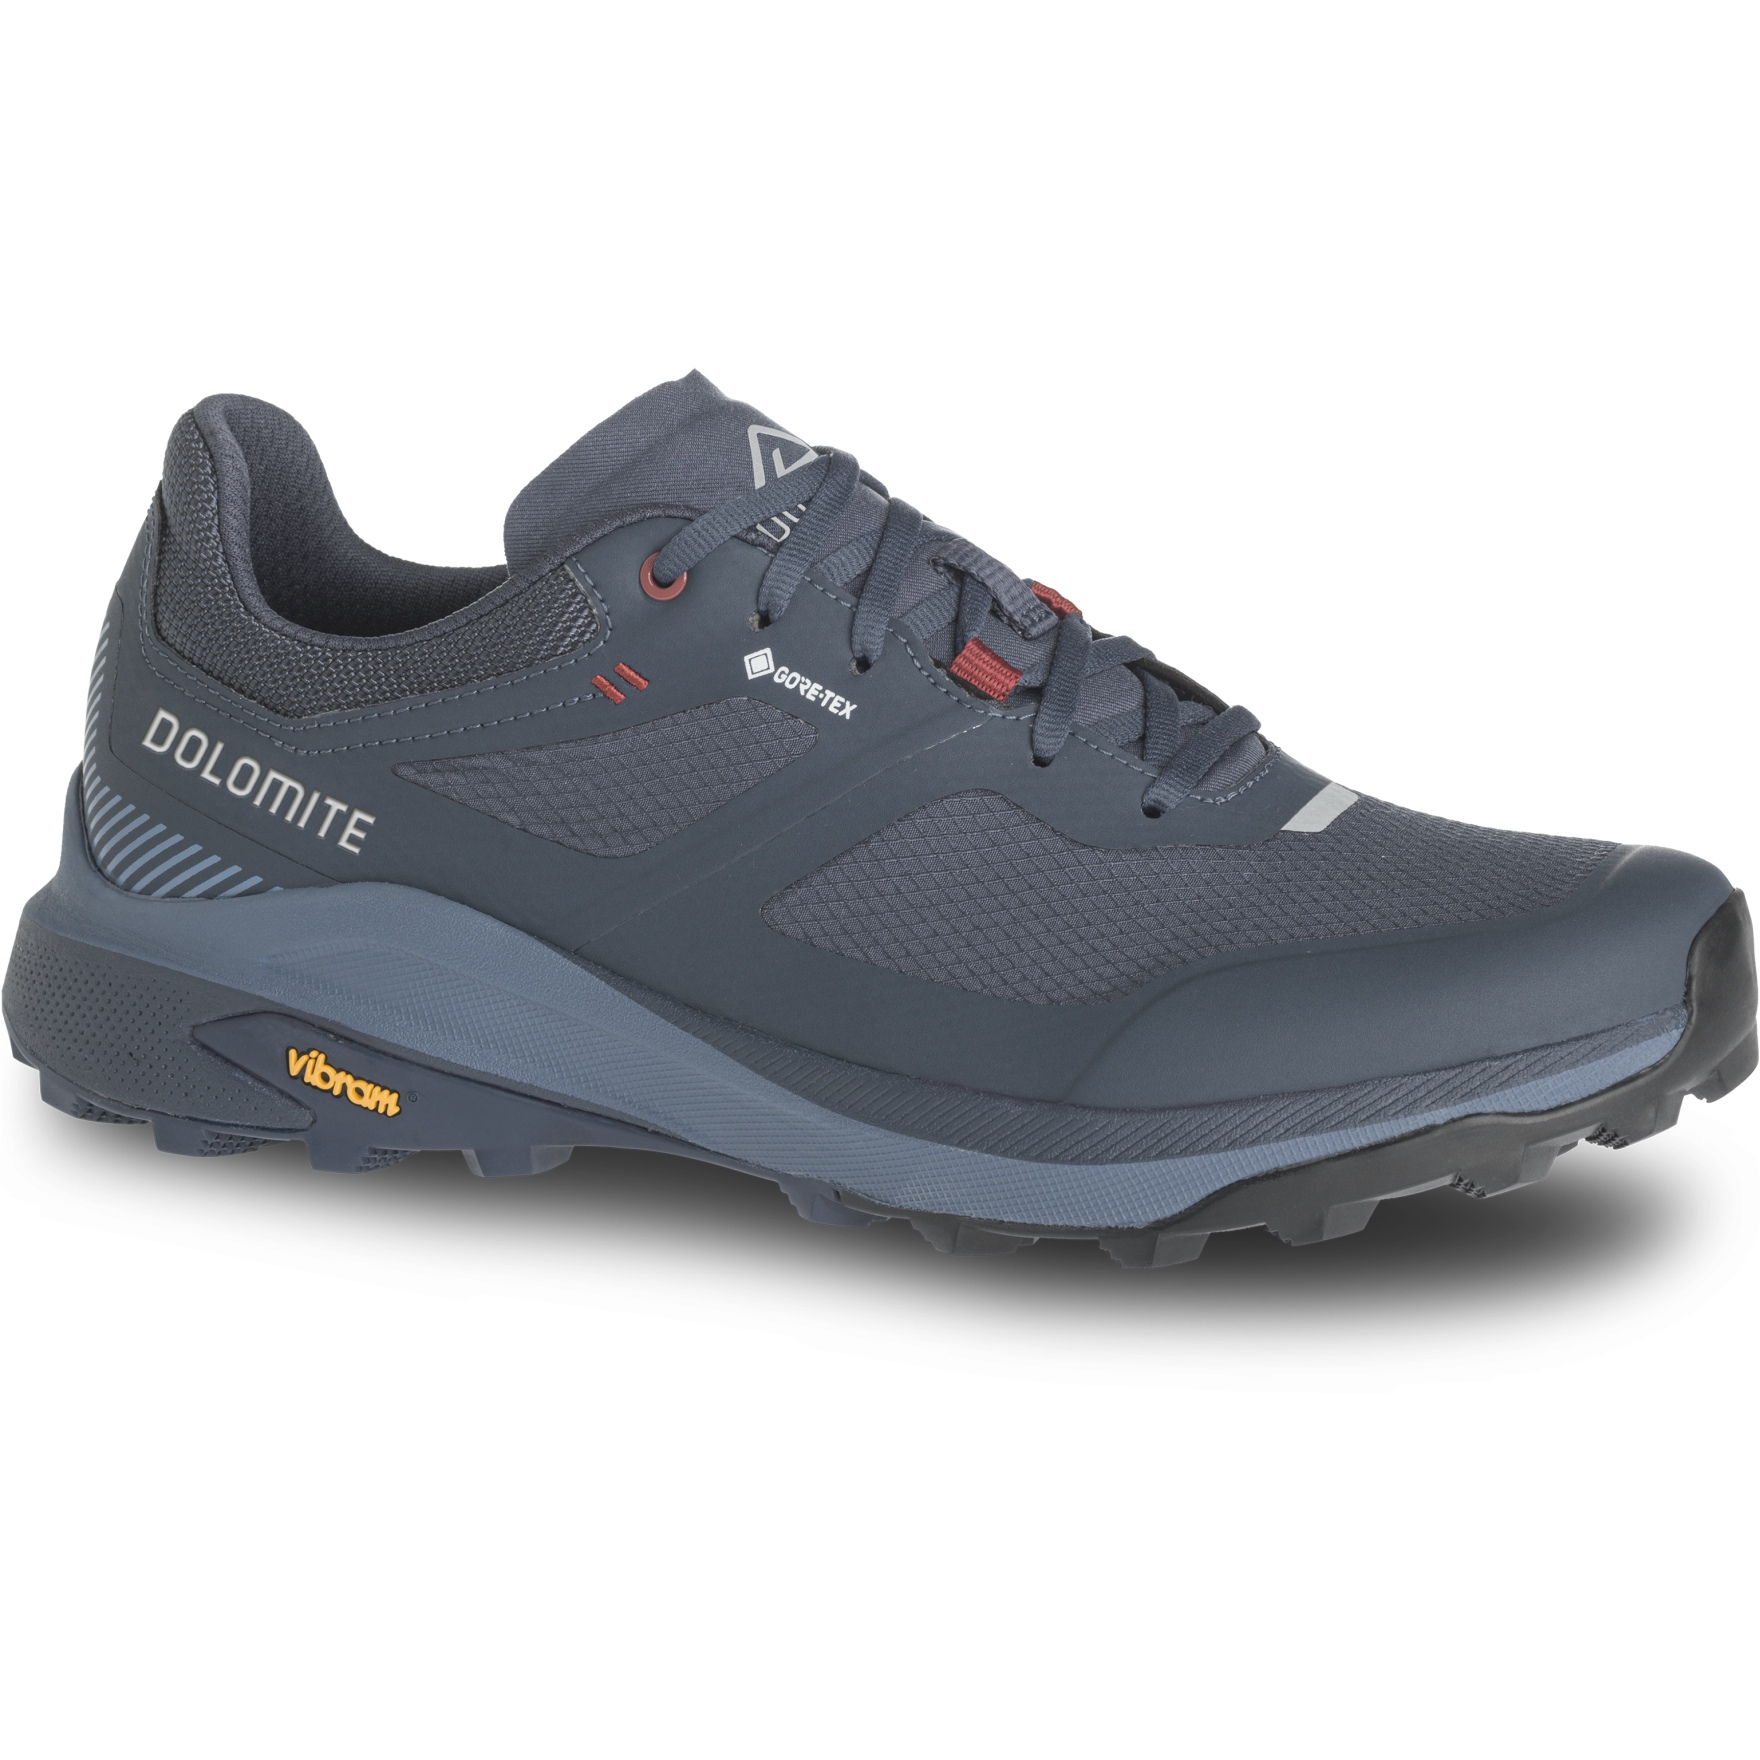 Produktbild von Dolomite Nibelia GORE-TEX Schuhe Herren - dark blue